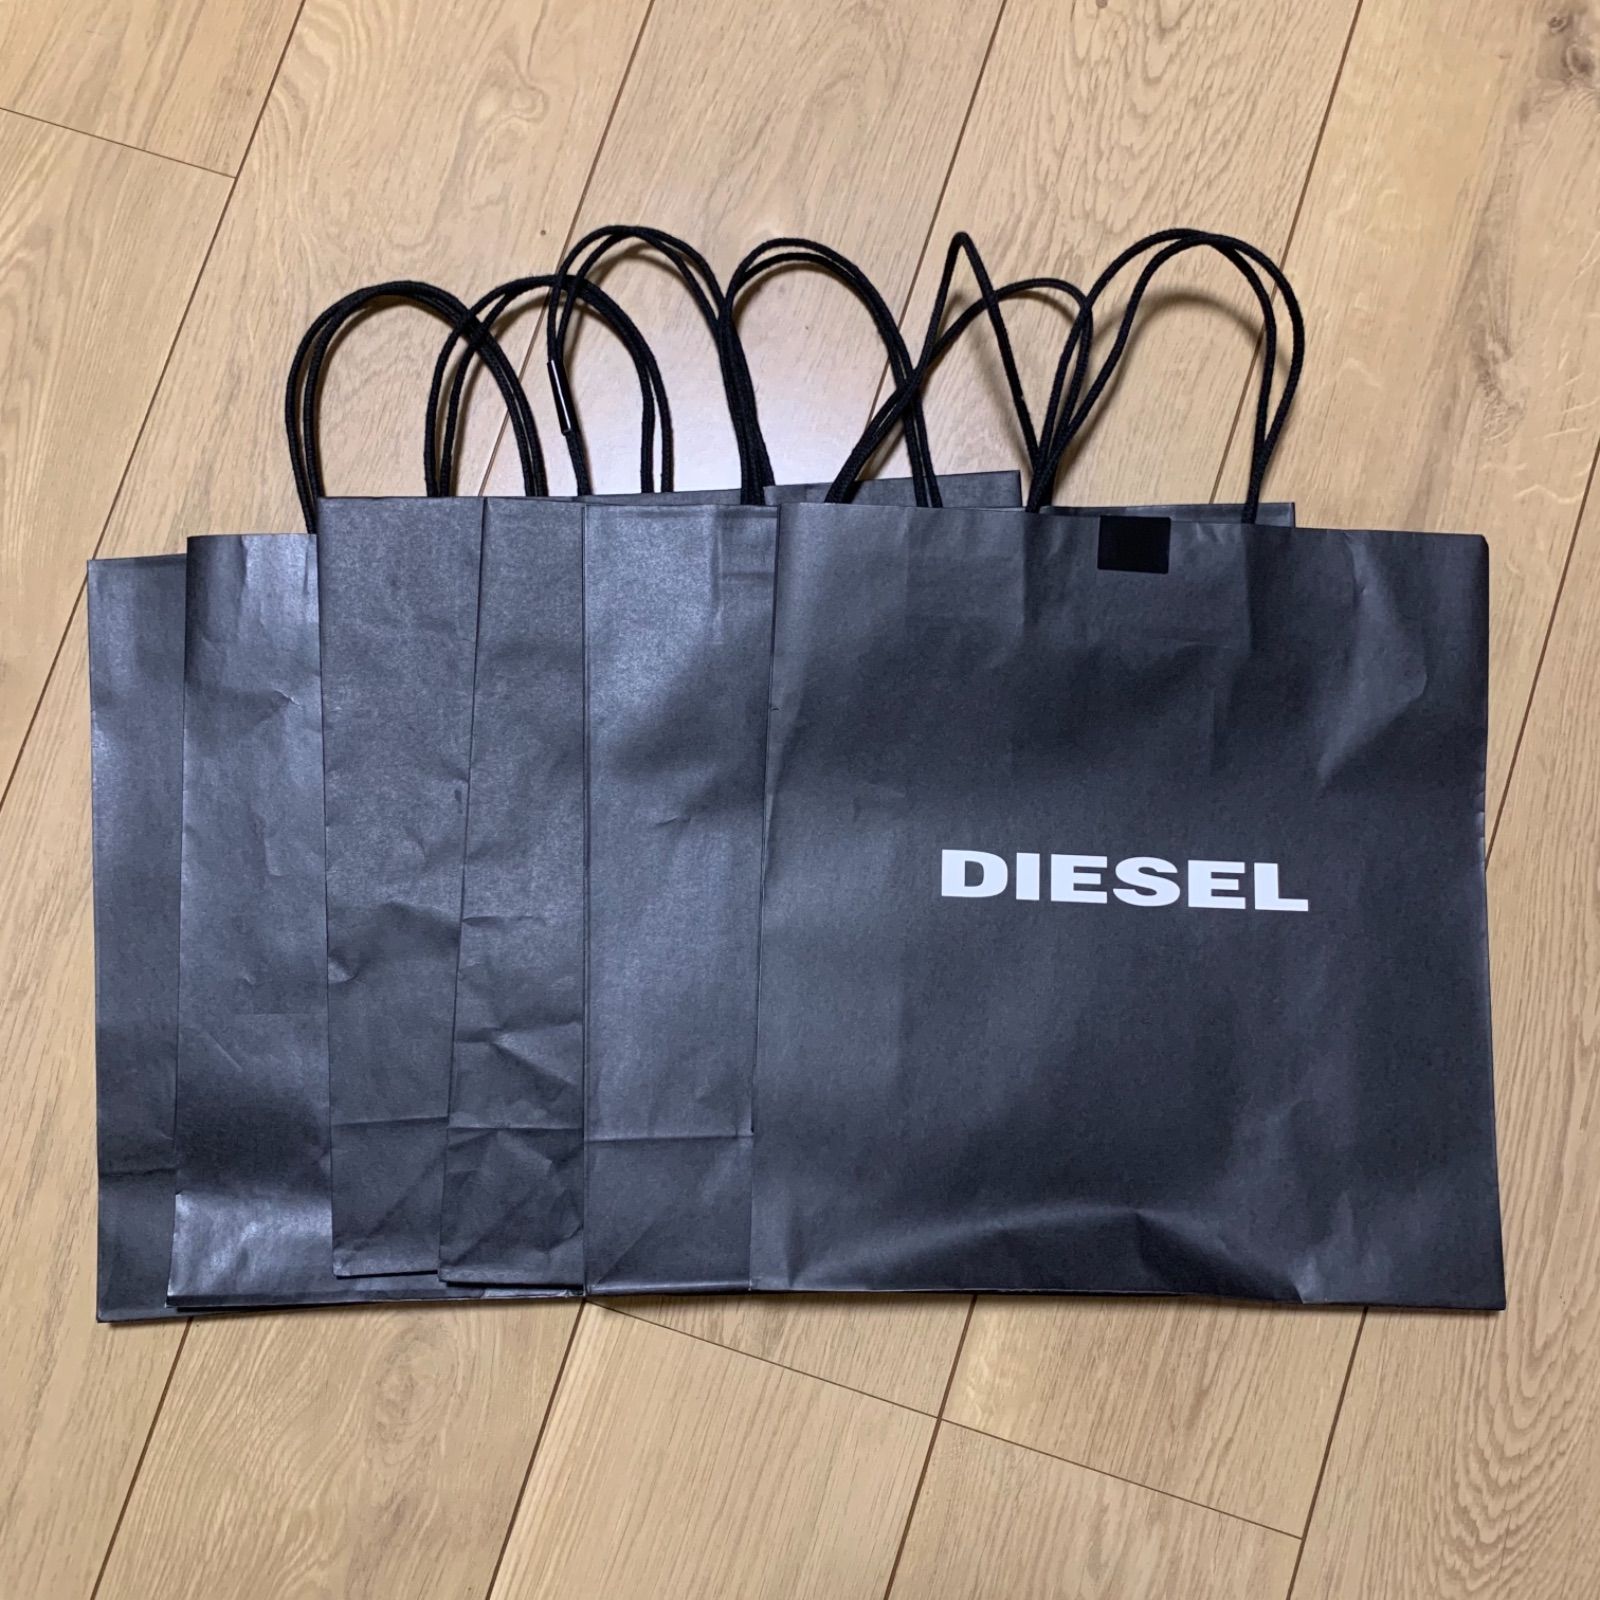 diesel ディーゼル ショップ袋 大 isosware.com